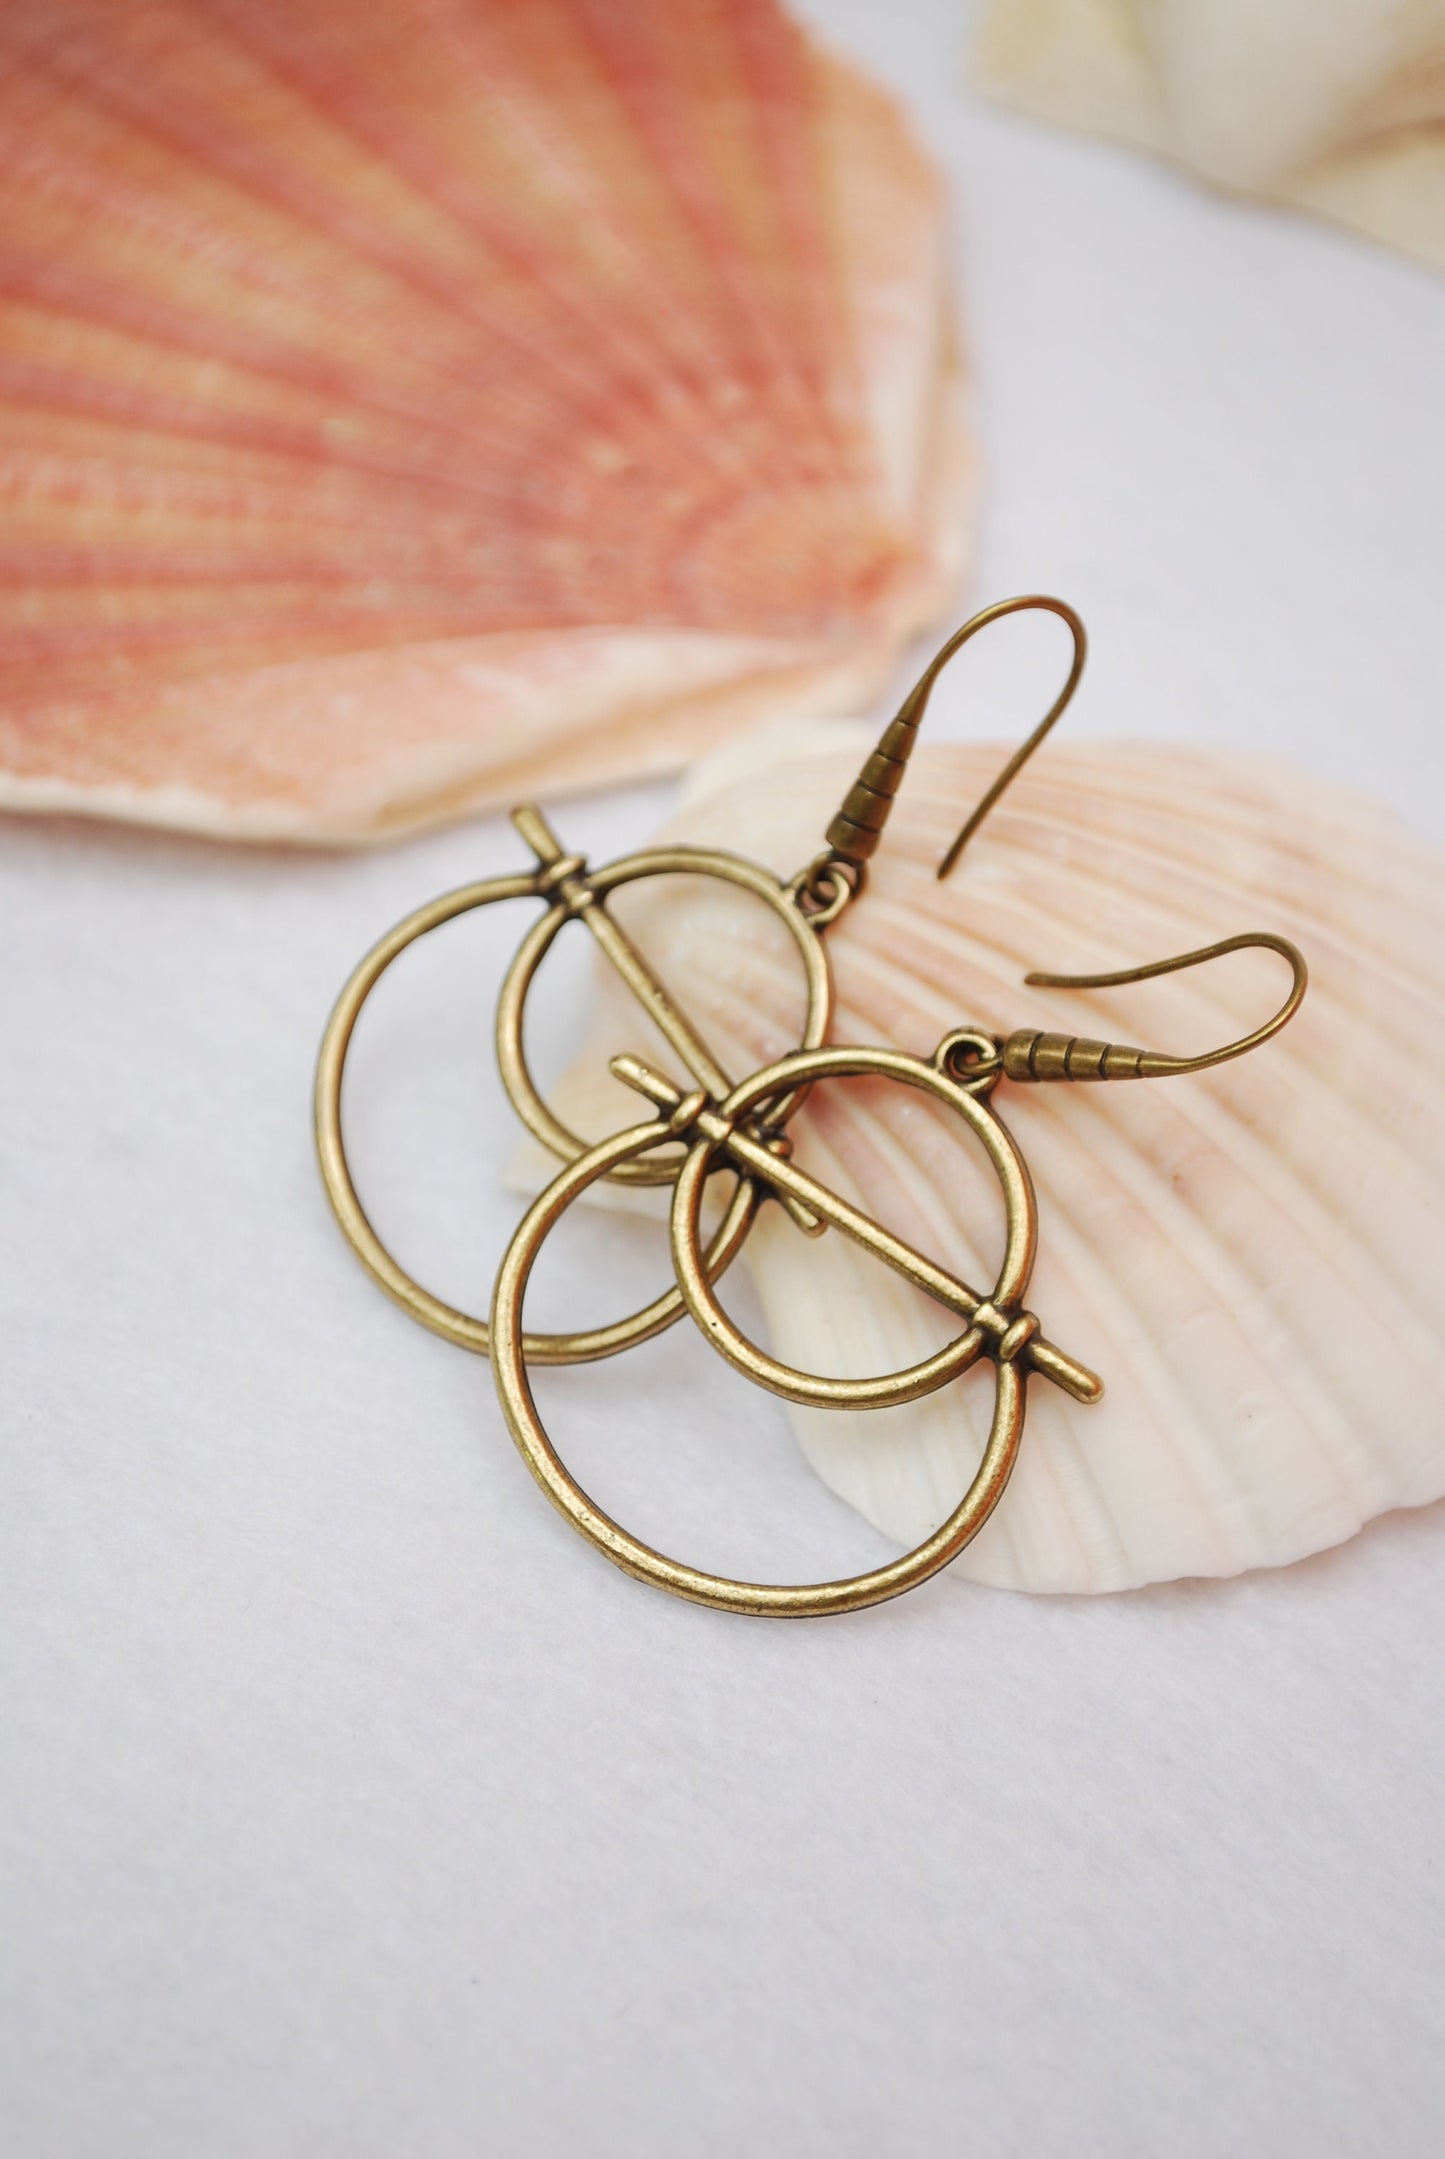 Abstract shape earrings, Bronze plated geometric earrings, summer lightweight drop earrings 5cm - 2"